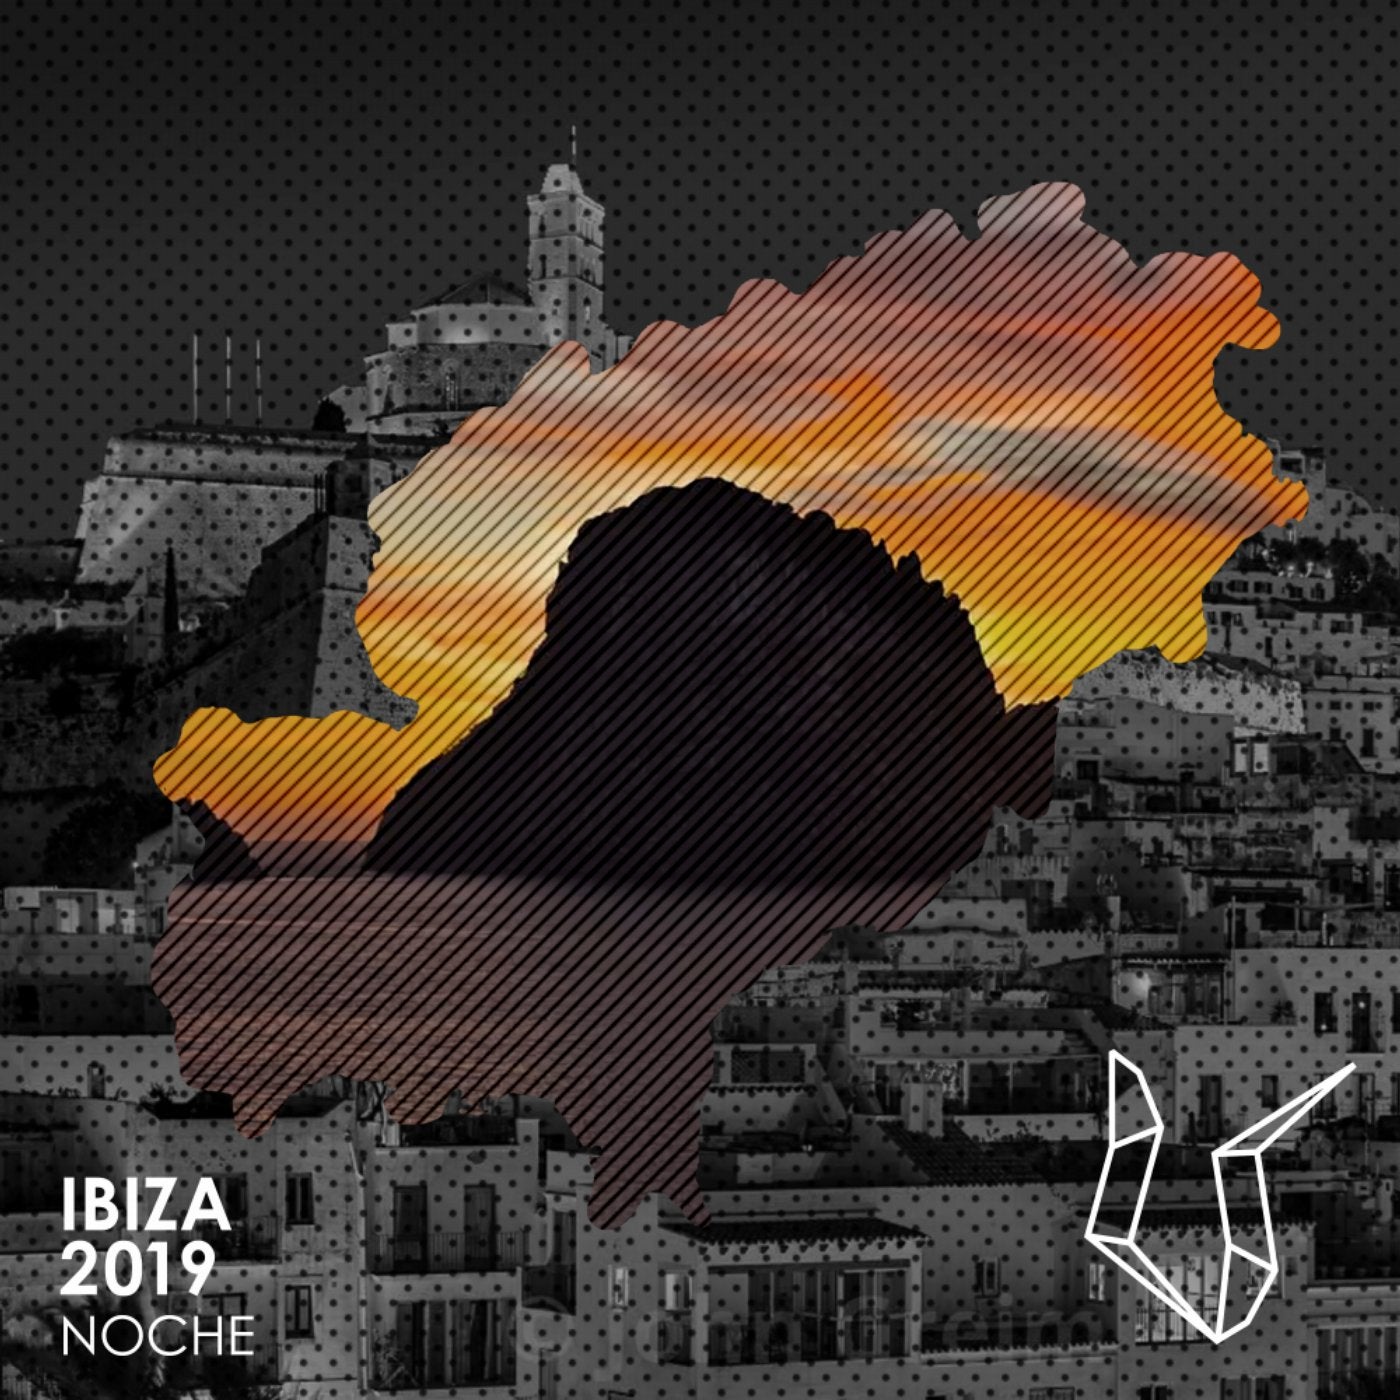 Ibiza 2019: Noche